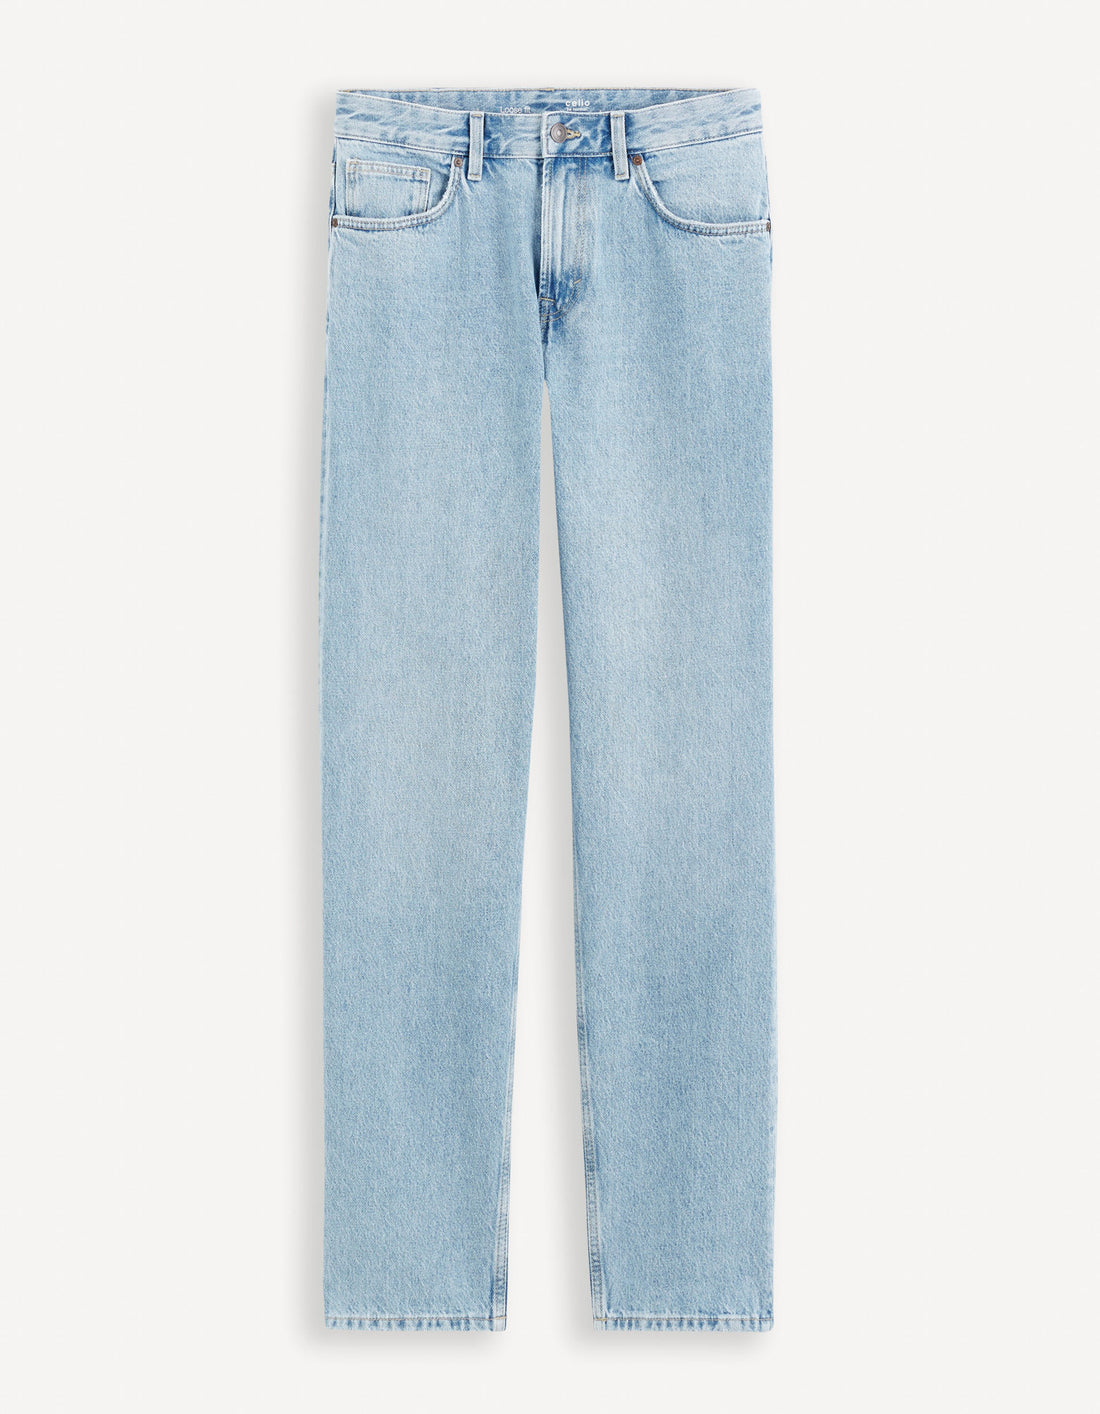 C75 Loose Jeans 100% Cotton_FOLOOSE_BLEACHED_02